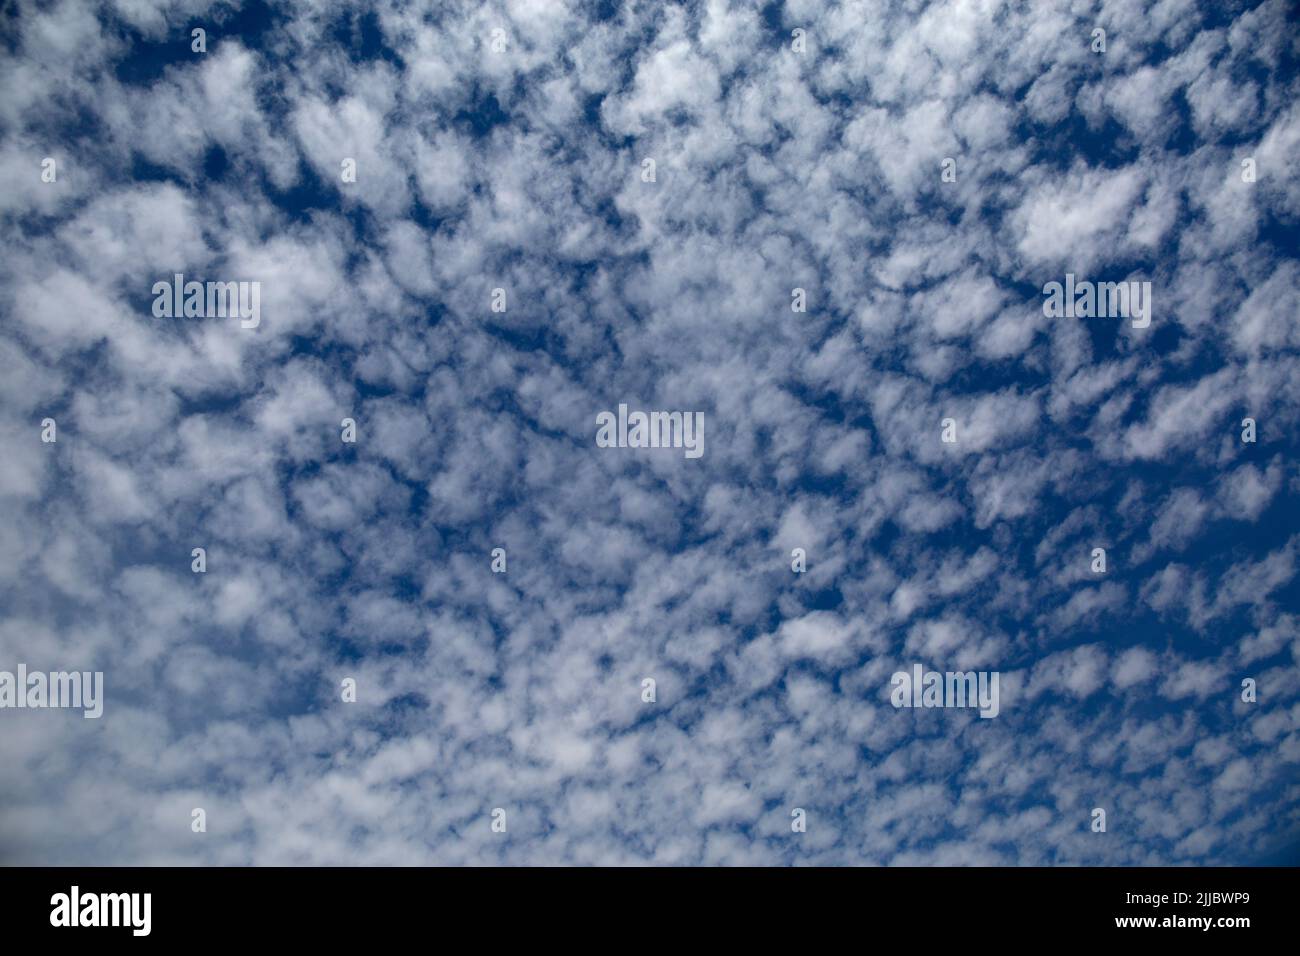 Altocumulus Castellanus Fair Weather Clouds in Blue Sky Stock Photo